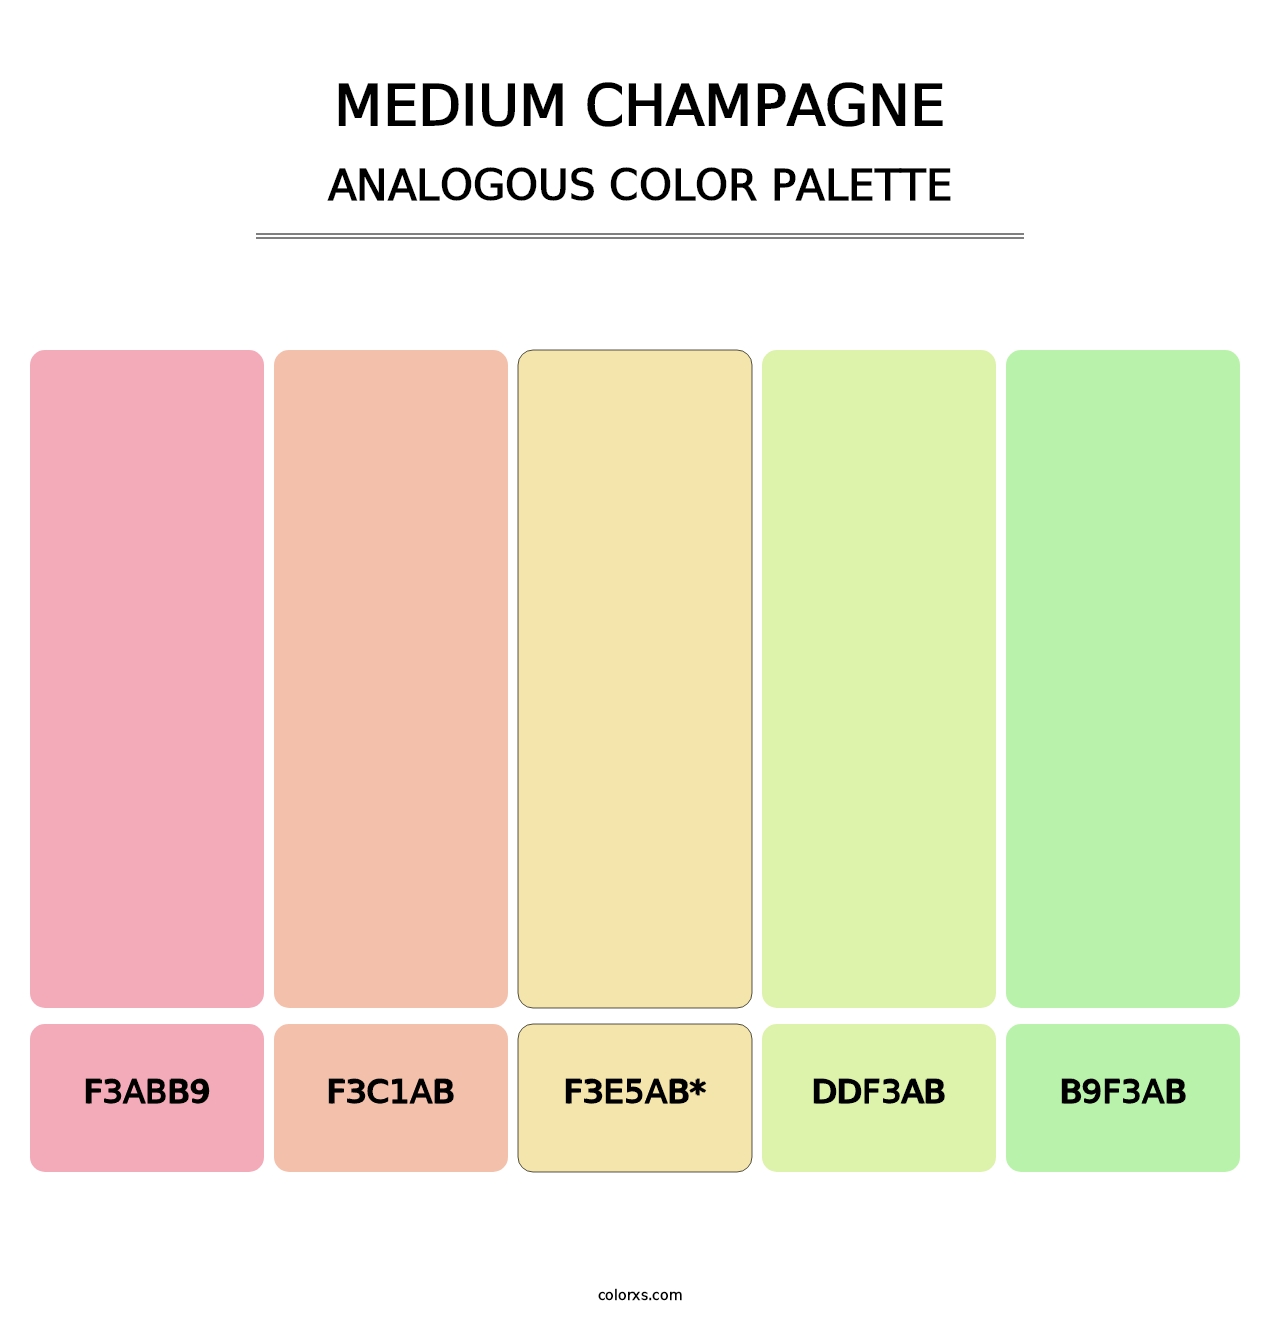 Medium Champagne - Analogous Color Palette